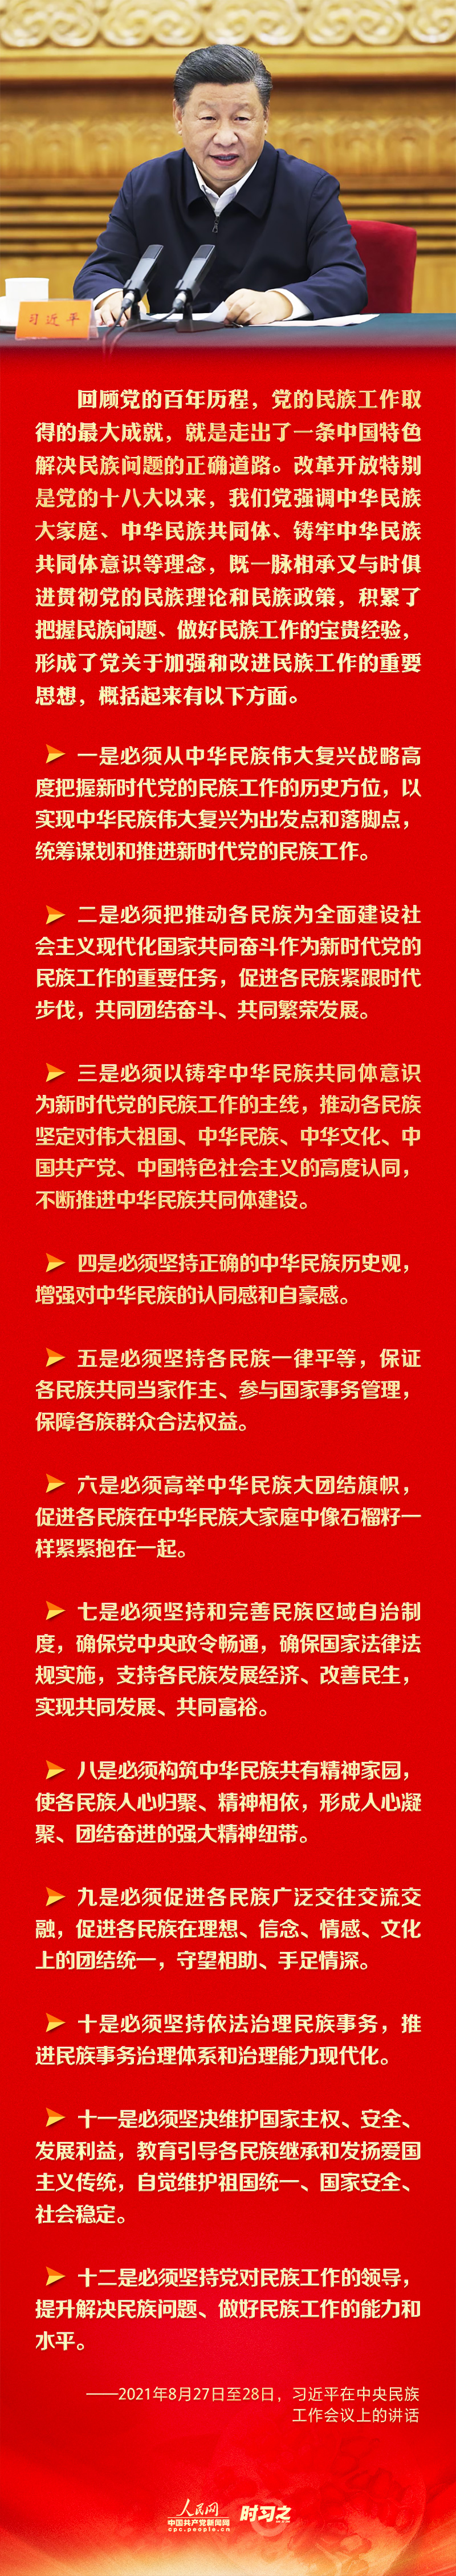 习近平提出这十二条根本遵循 人民网-中国共产党新闻网.jpg